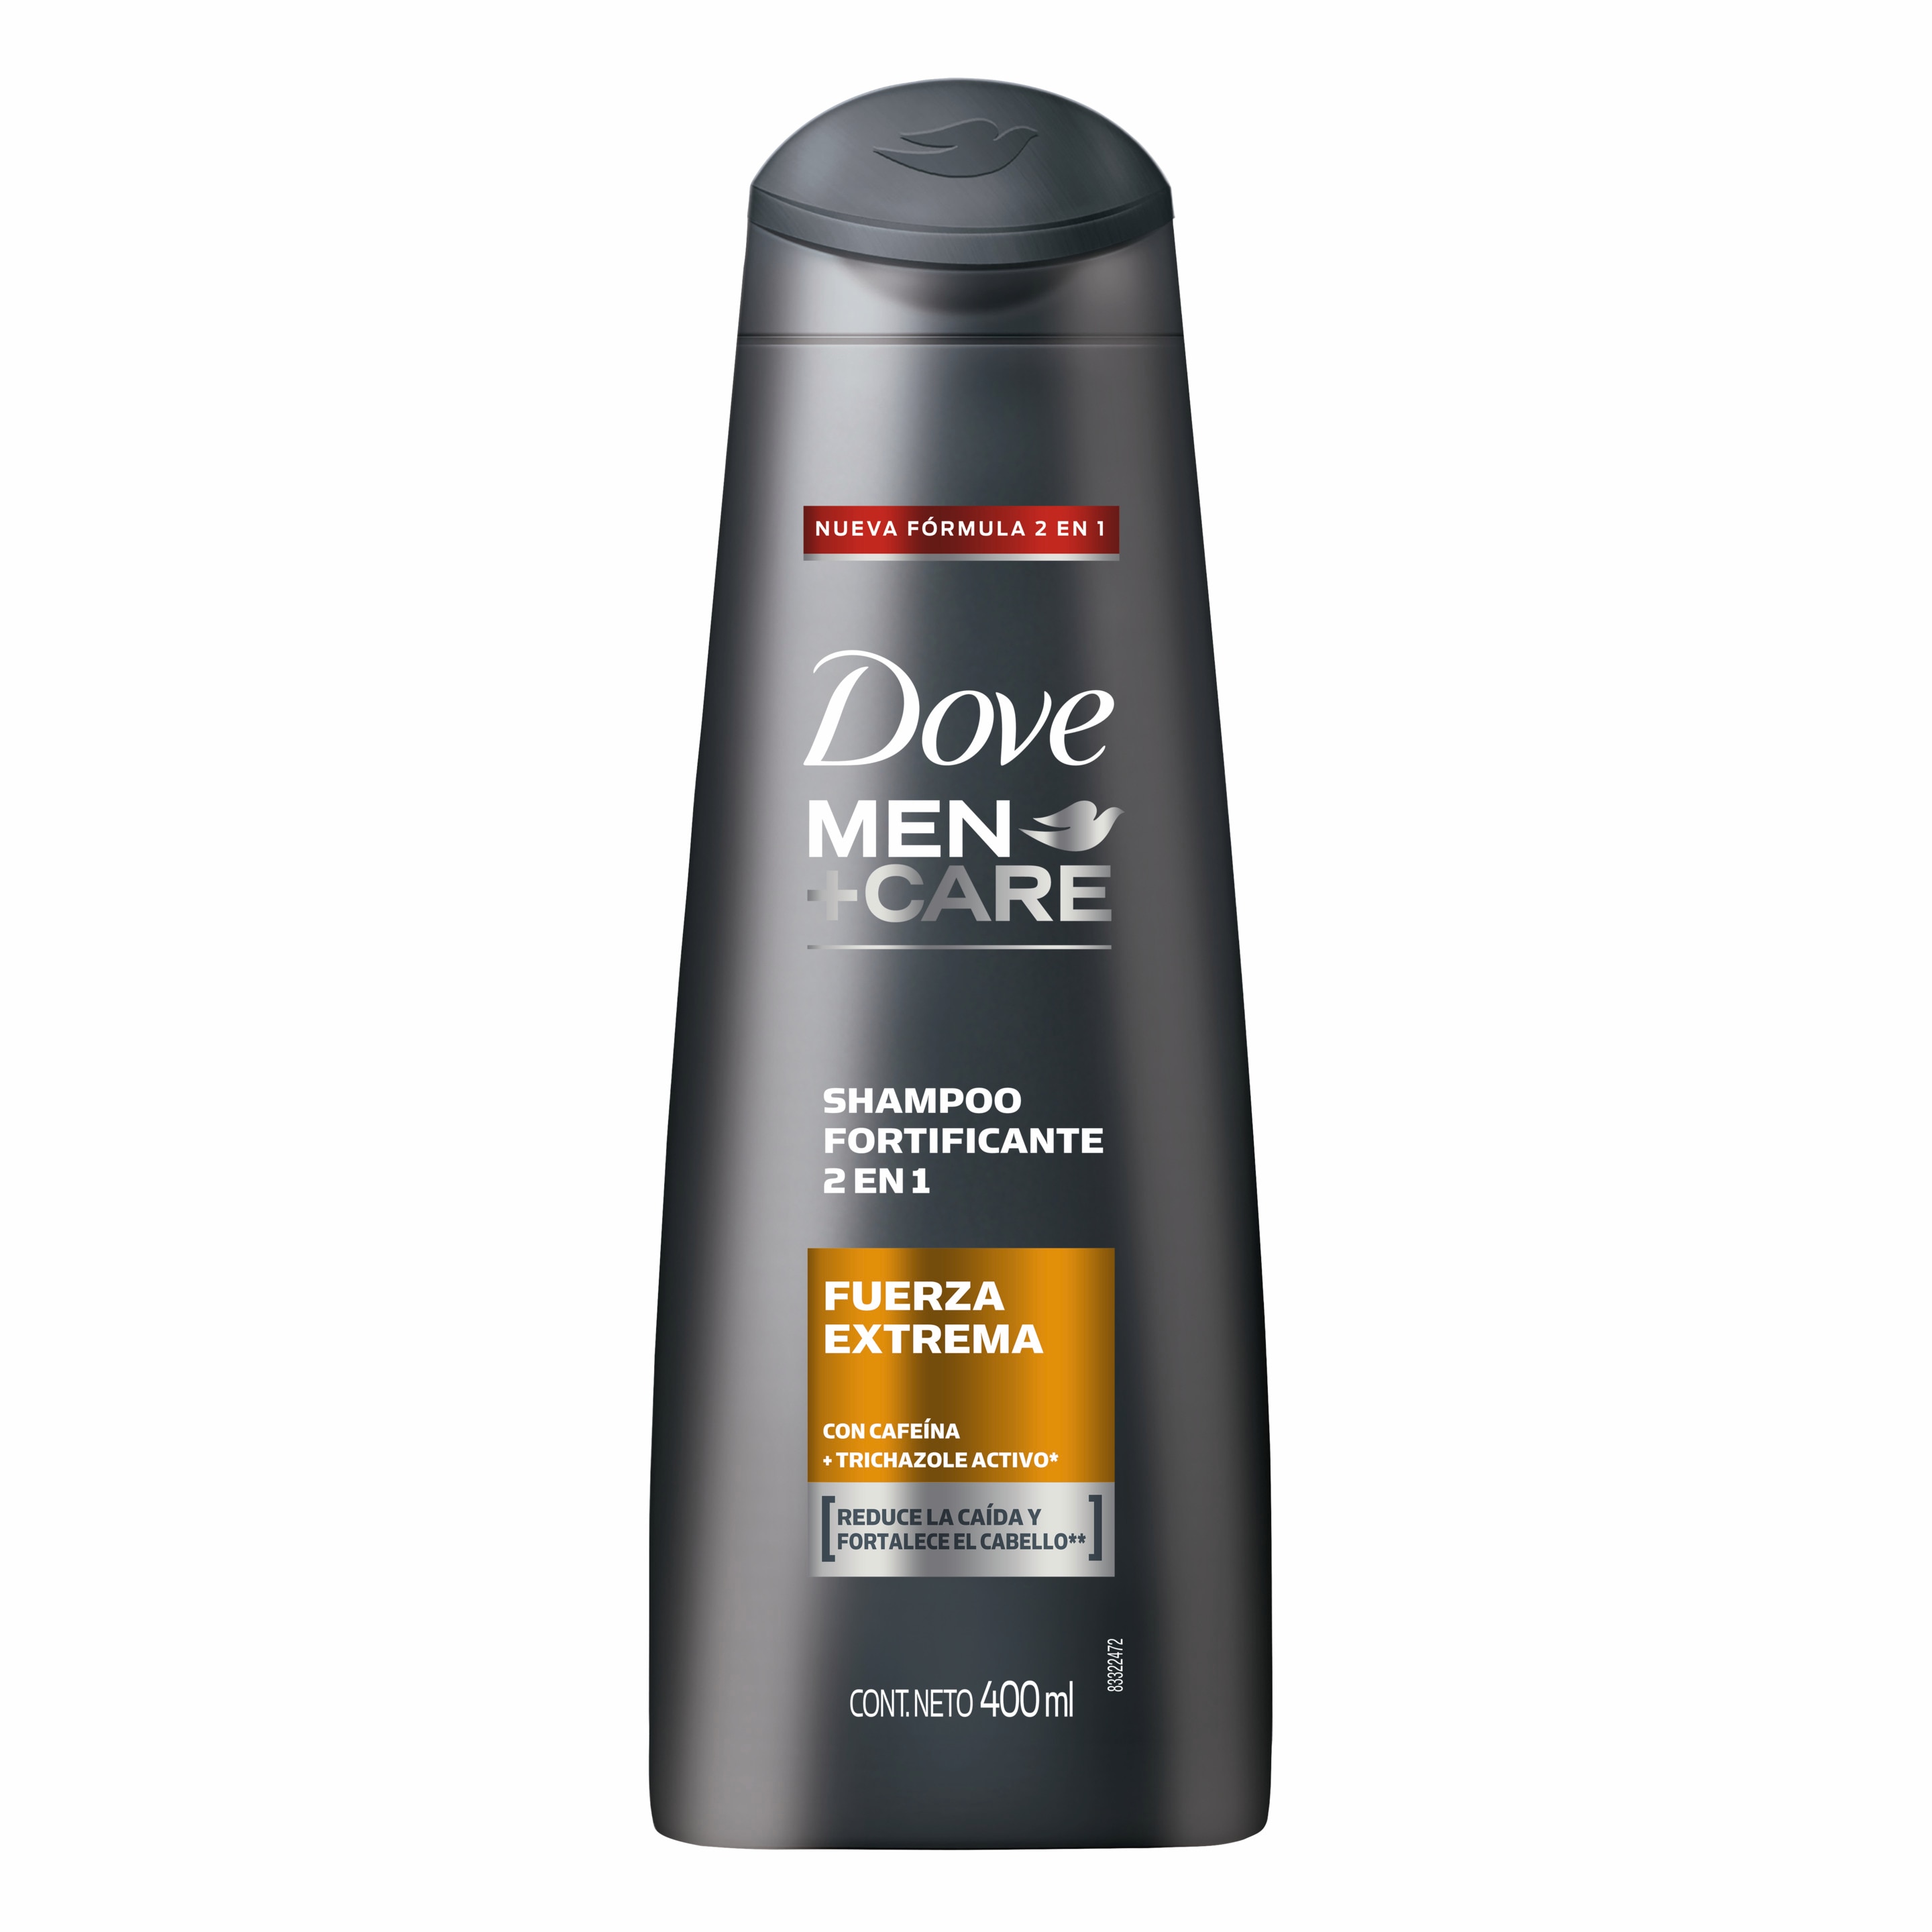 Imagen de envase Dove Men+Care Shampoo 2 en 1 Fuerza Extrema 200ml